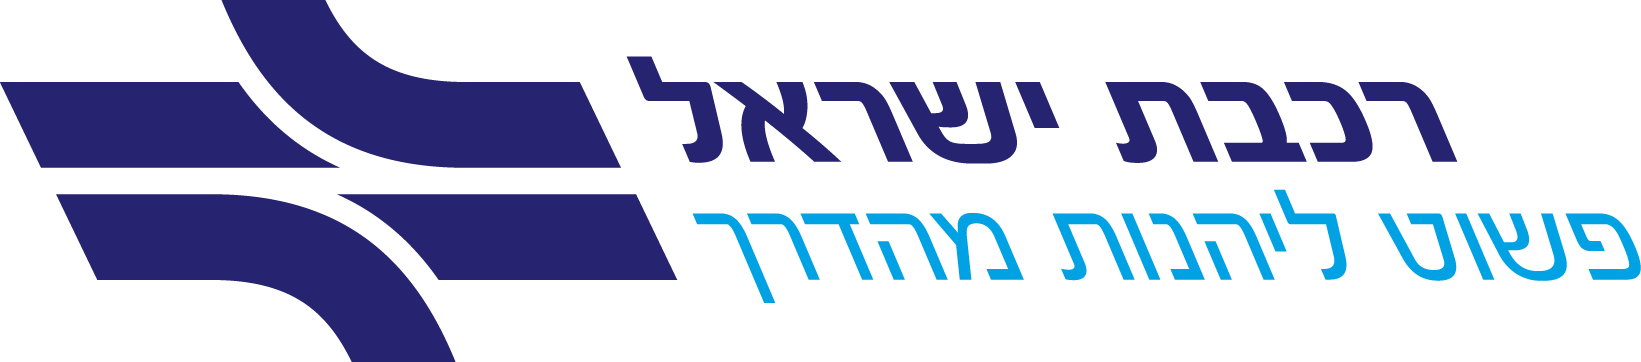 לוגו רכבת ישראל פשוט ליהנות מהדרך